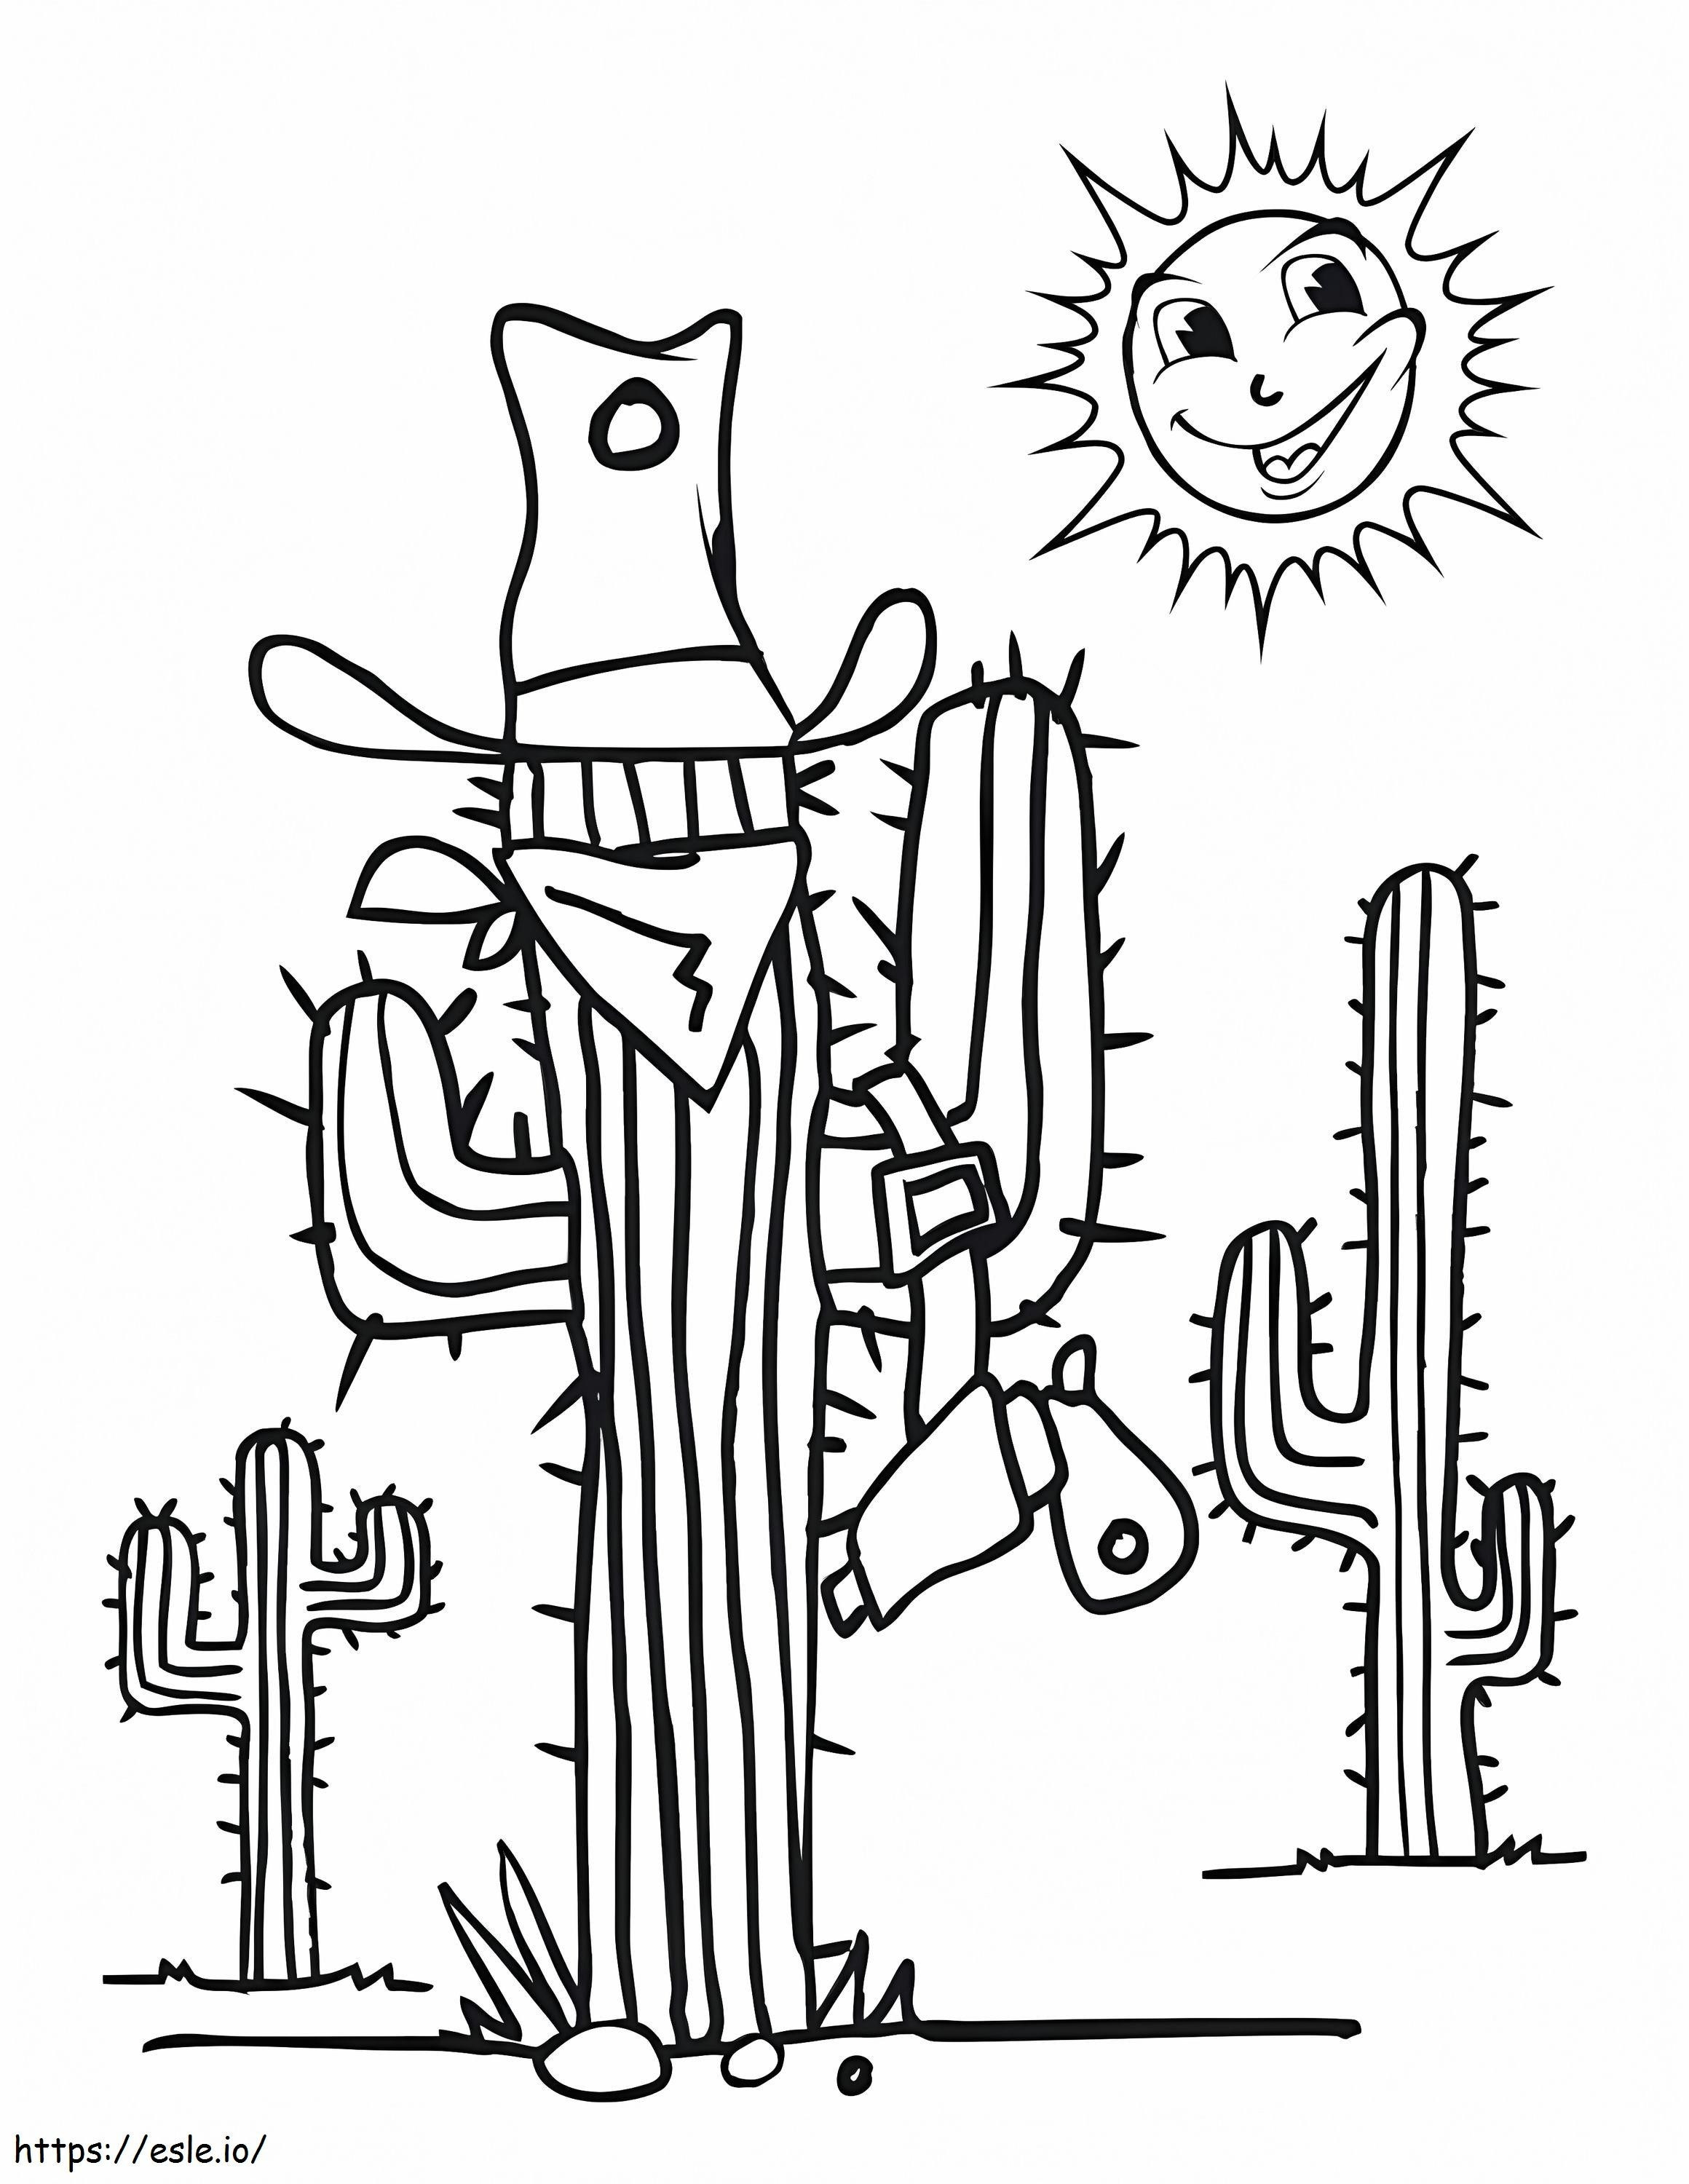 Kaktus I Słońce kolorowanka